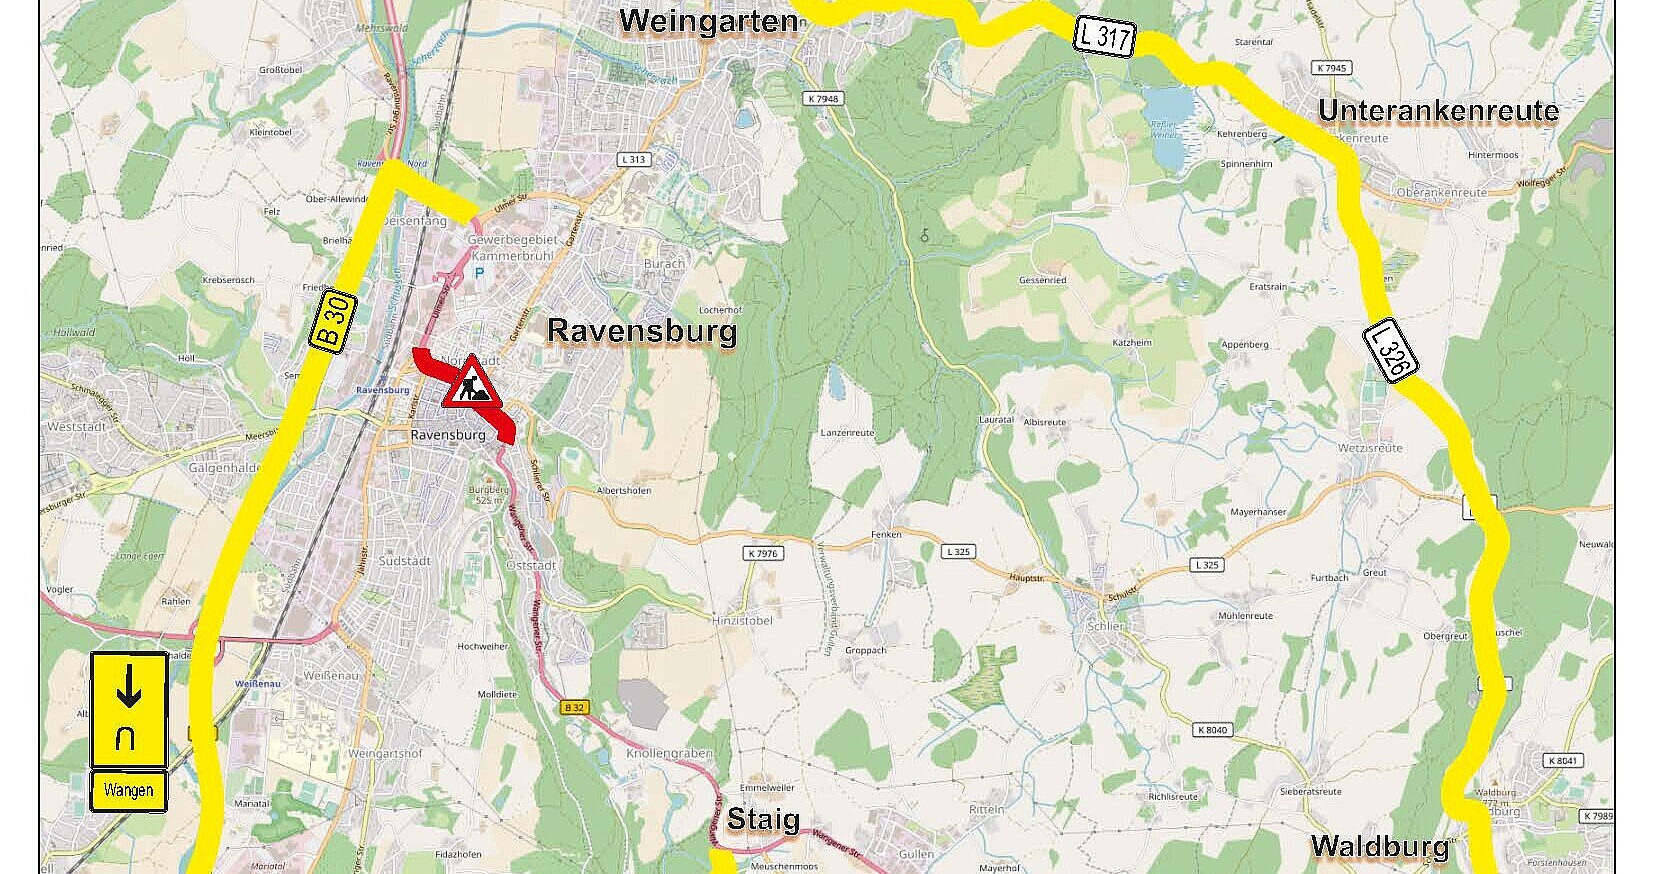 Umleitungsskizze für den überörtlichen Verkehr B 32 bei der Erneuerung der Hauptwasserleitung und Fahrbahndeckenerneuerung in der Ortsdurchfahrt Ravensburg